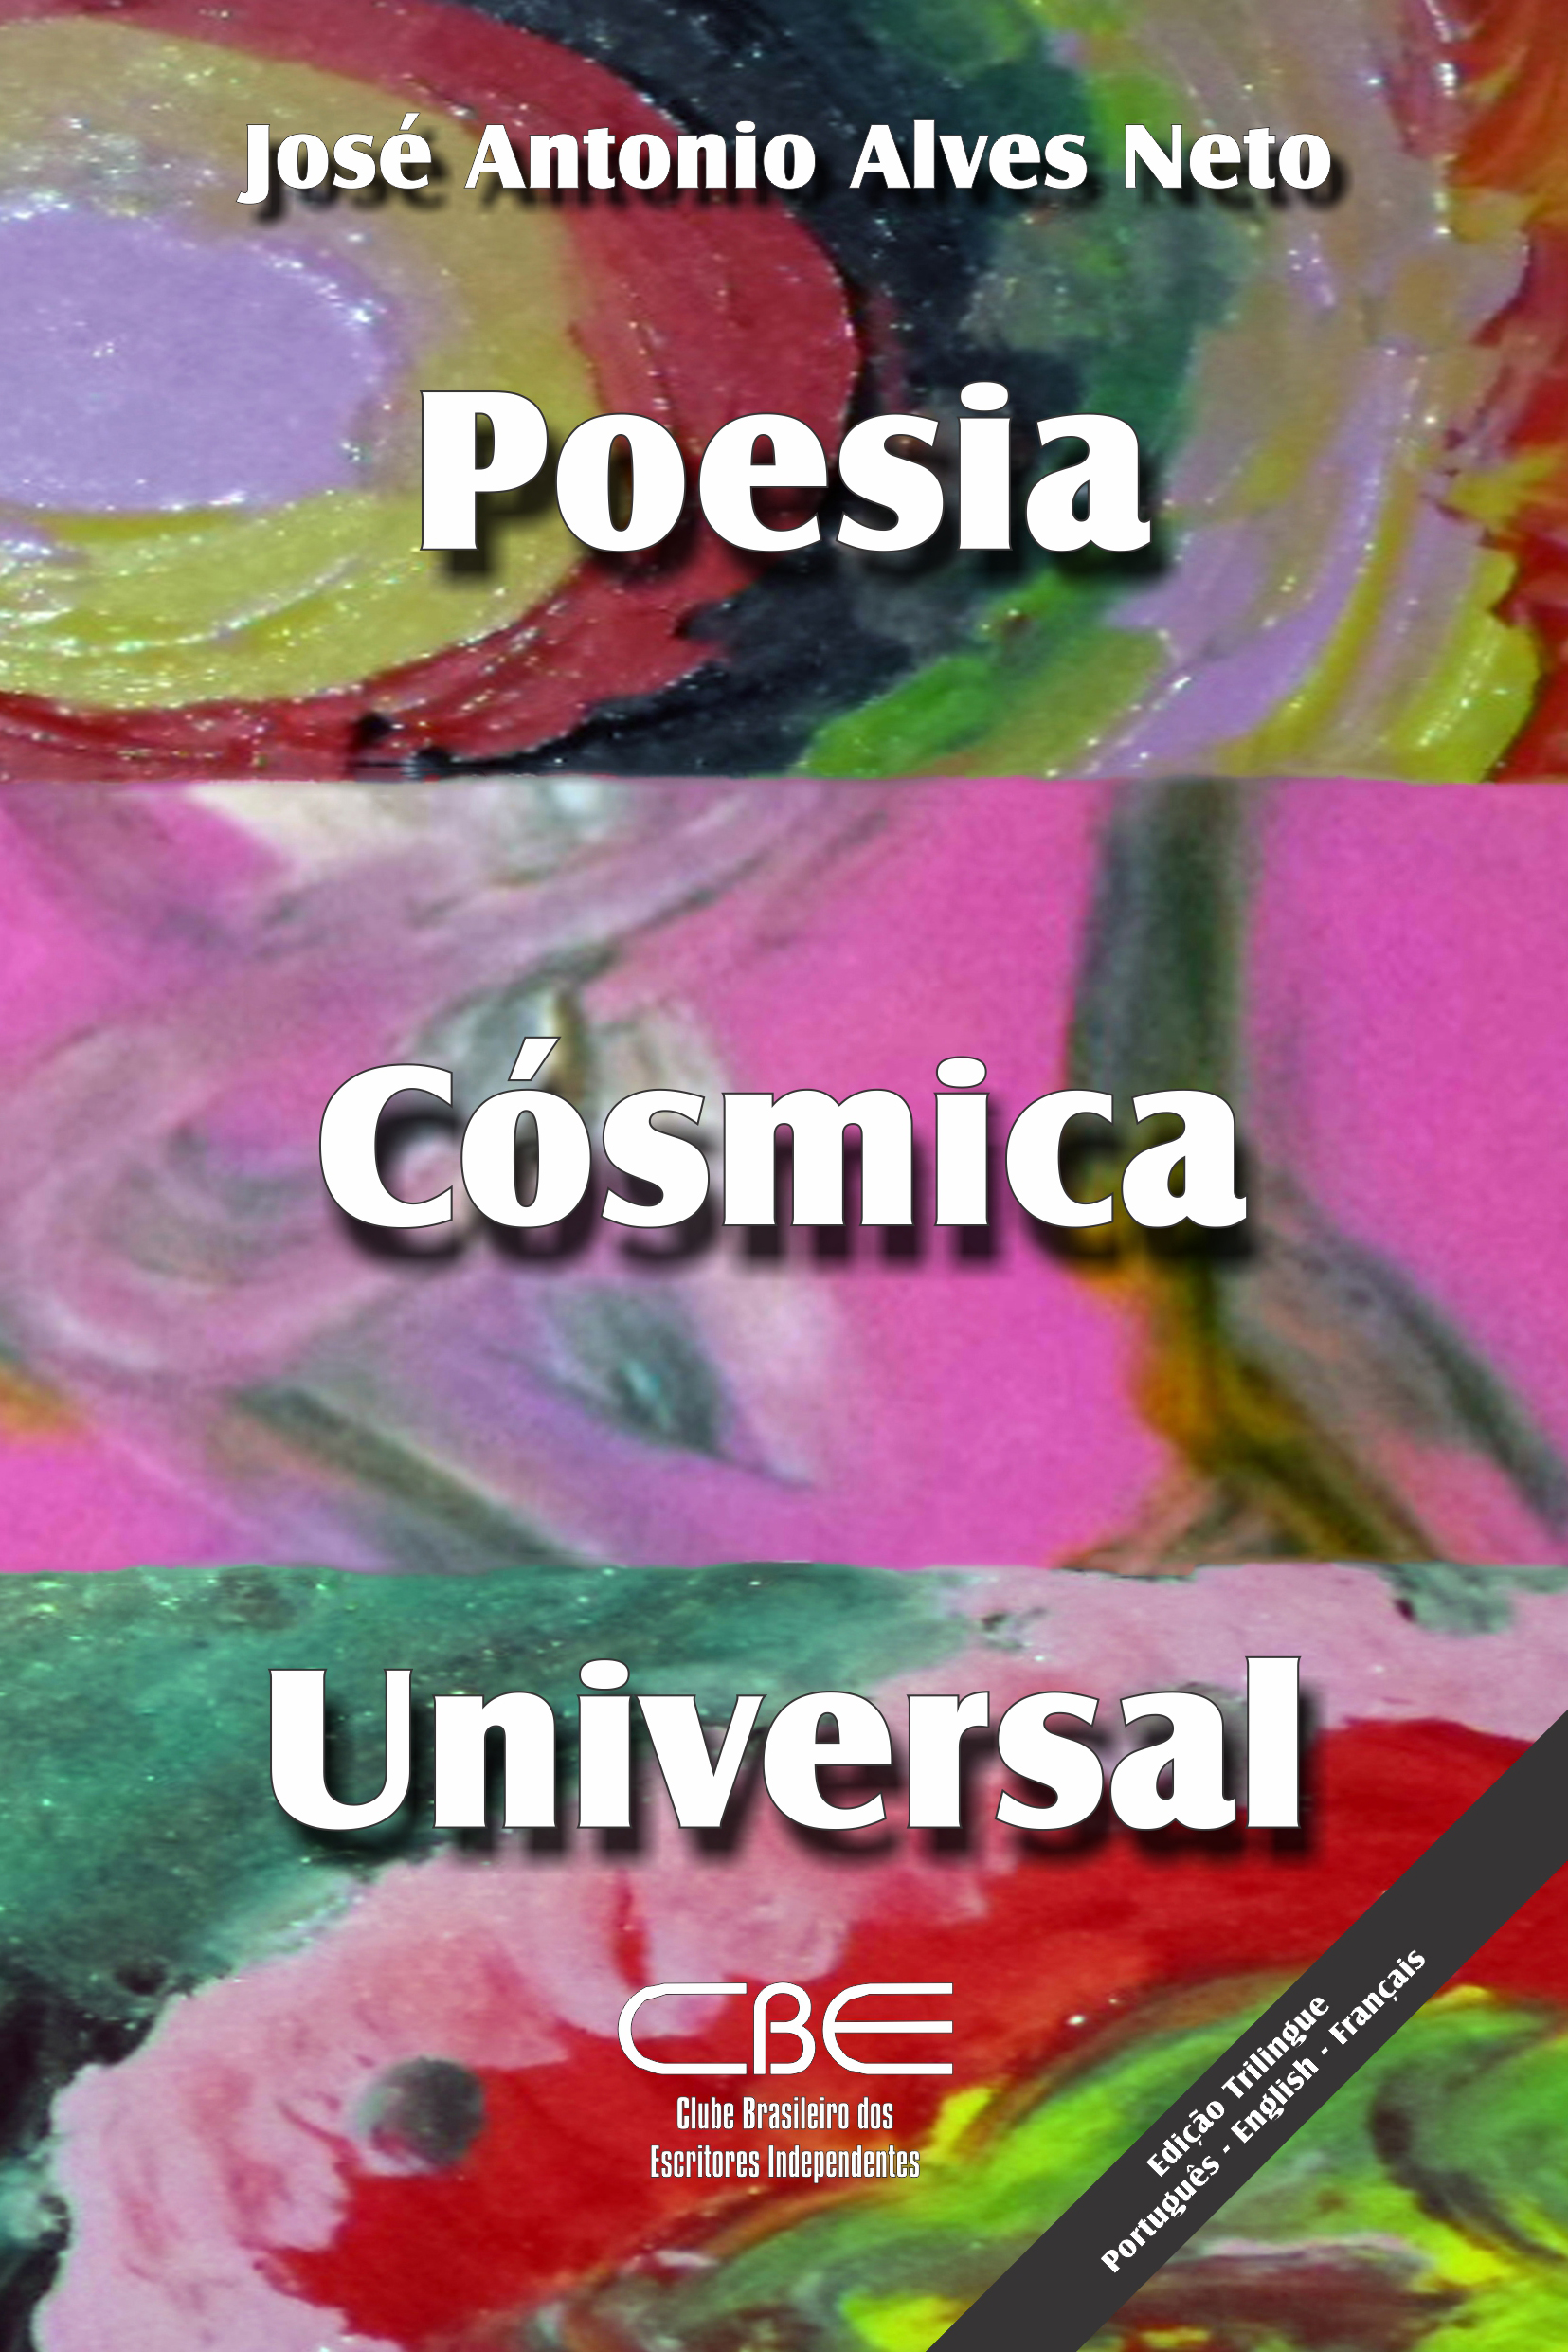 jaan poesia cosmica universal pt en fr CAPA FRENTE 300dpi